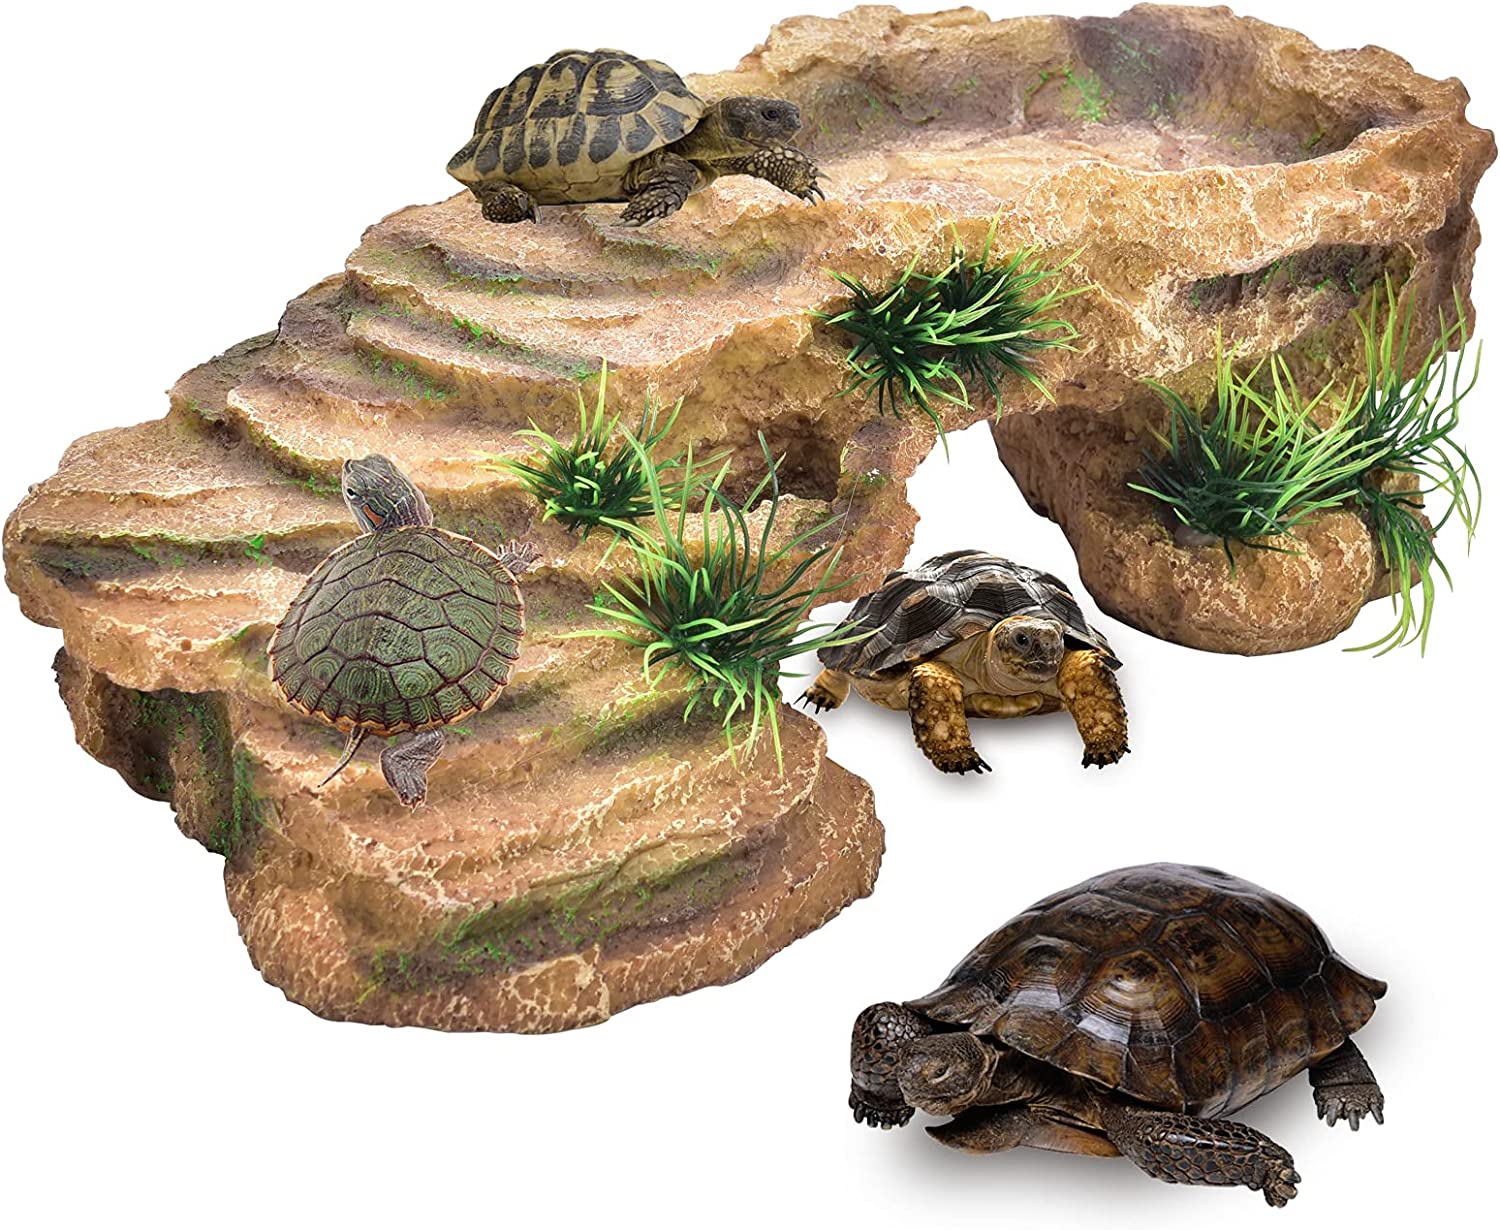  Rypet Turtle Tank Aquarium - Reptile Habitat, Turtle